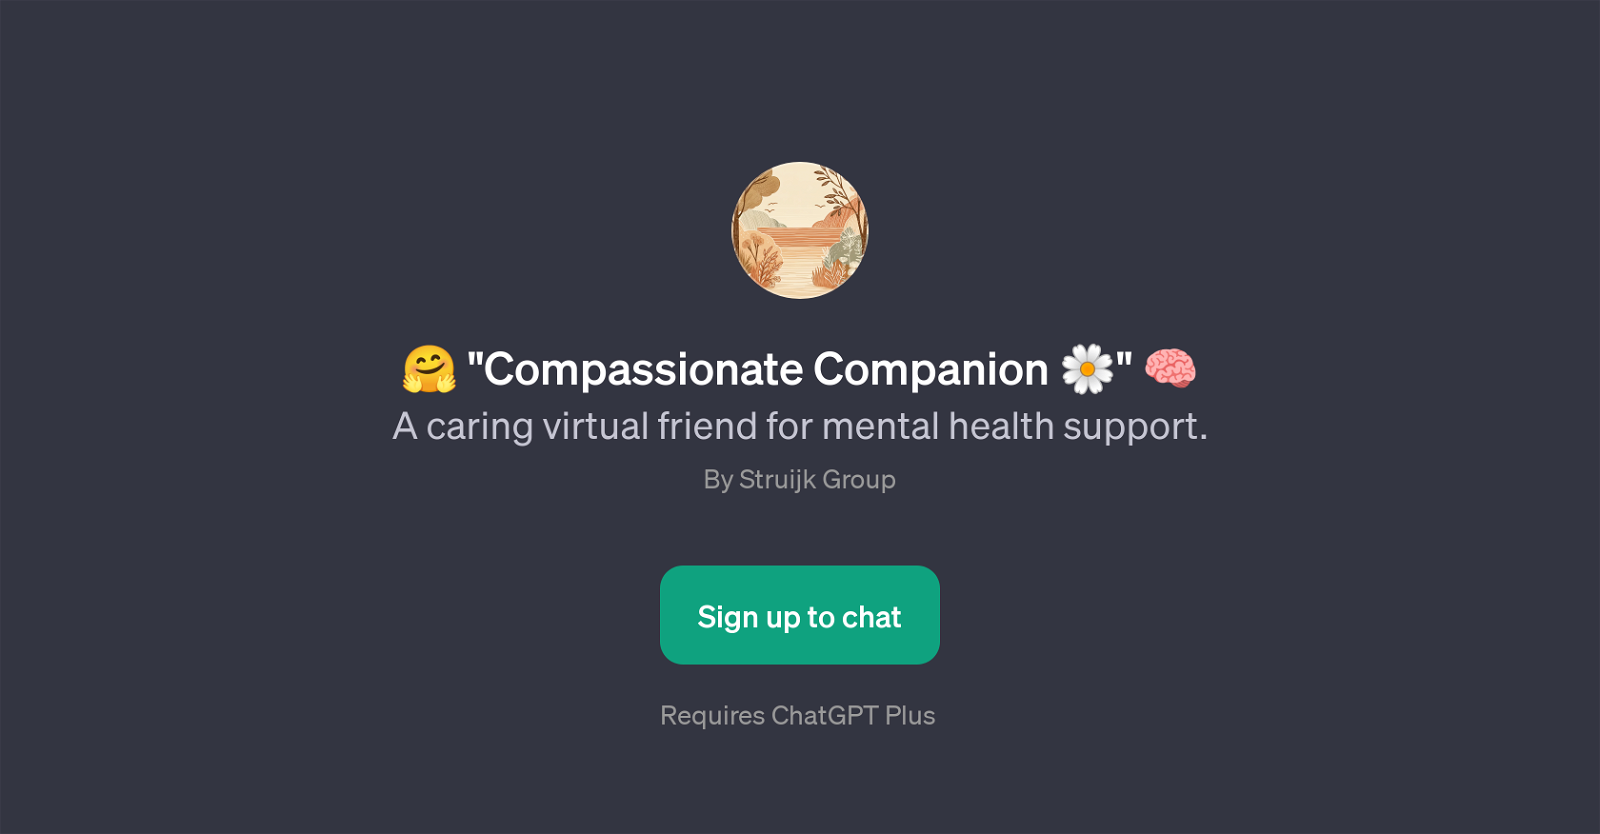 Compassionate Companion website